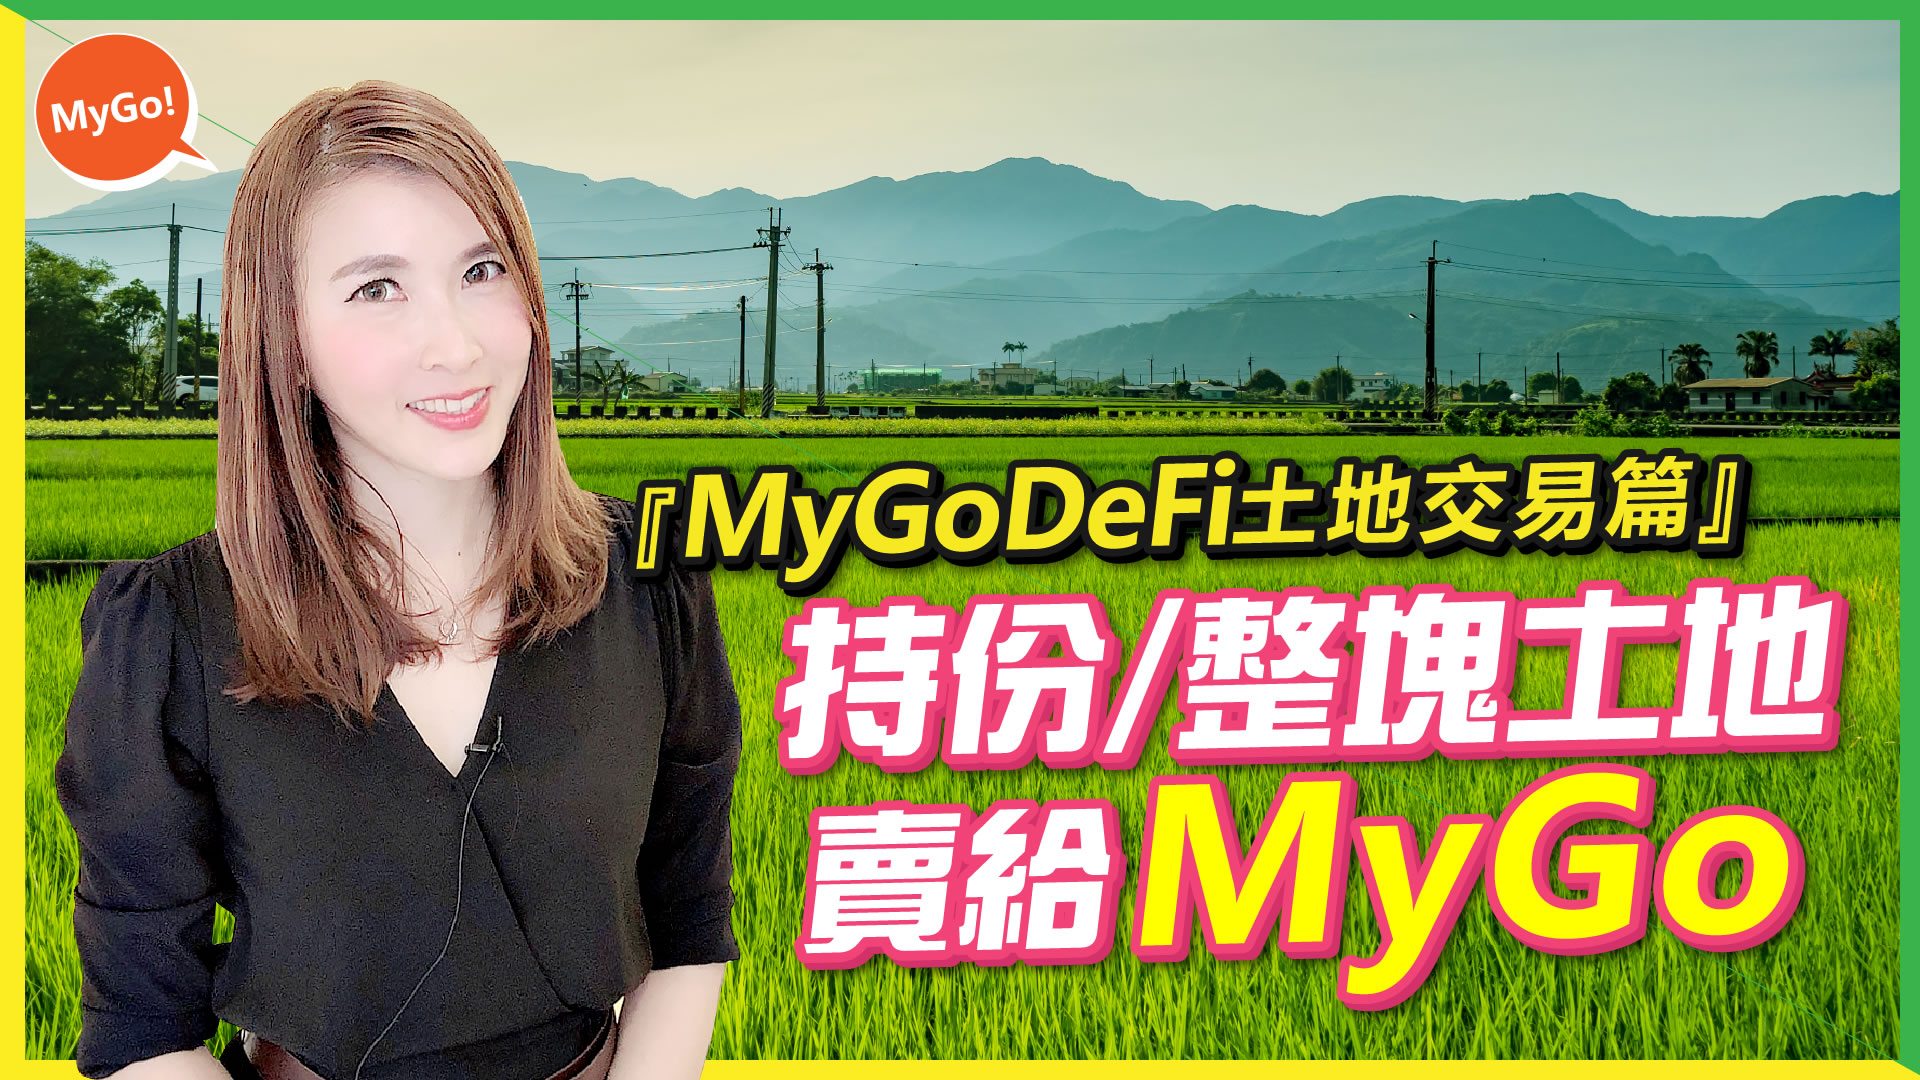 MyGoDeFi土地交易篇-持分/整塊土地賣給MyGo